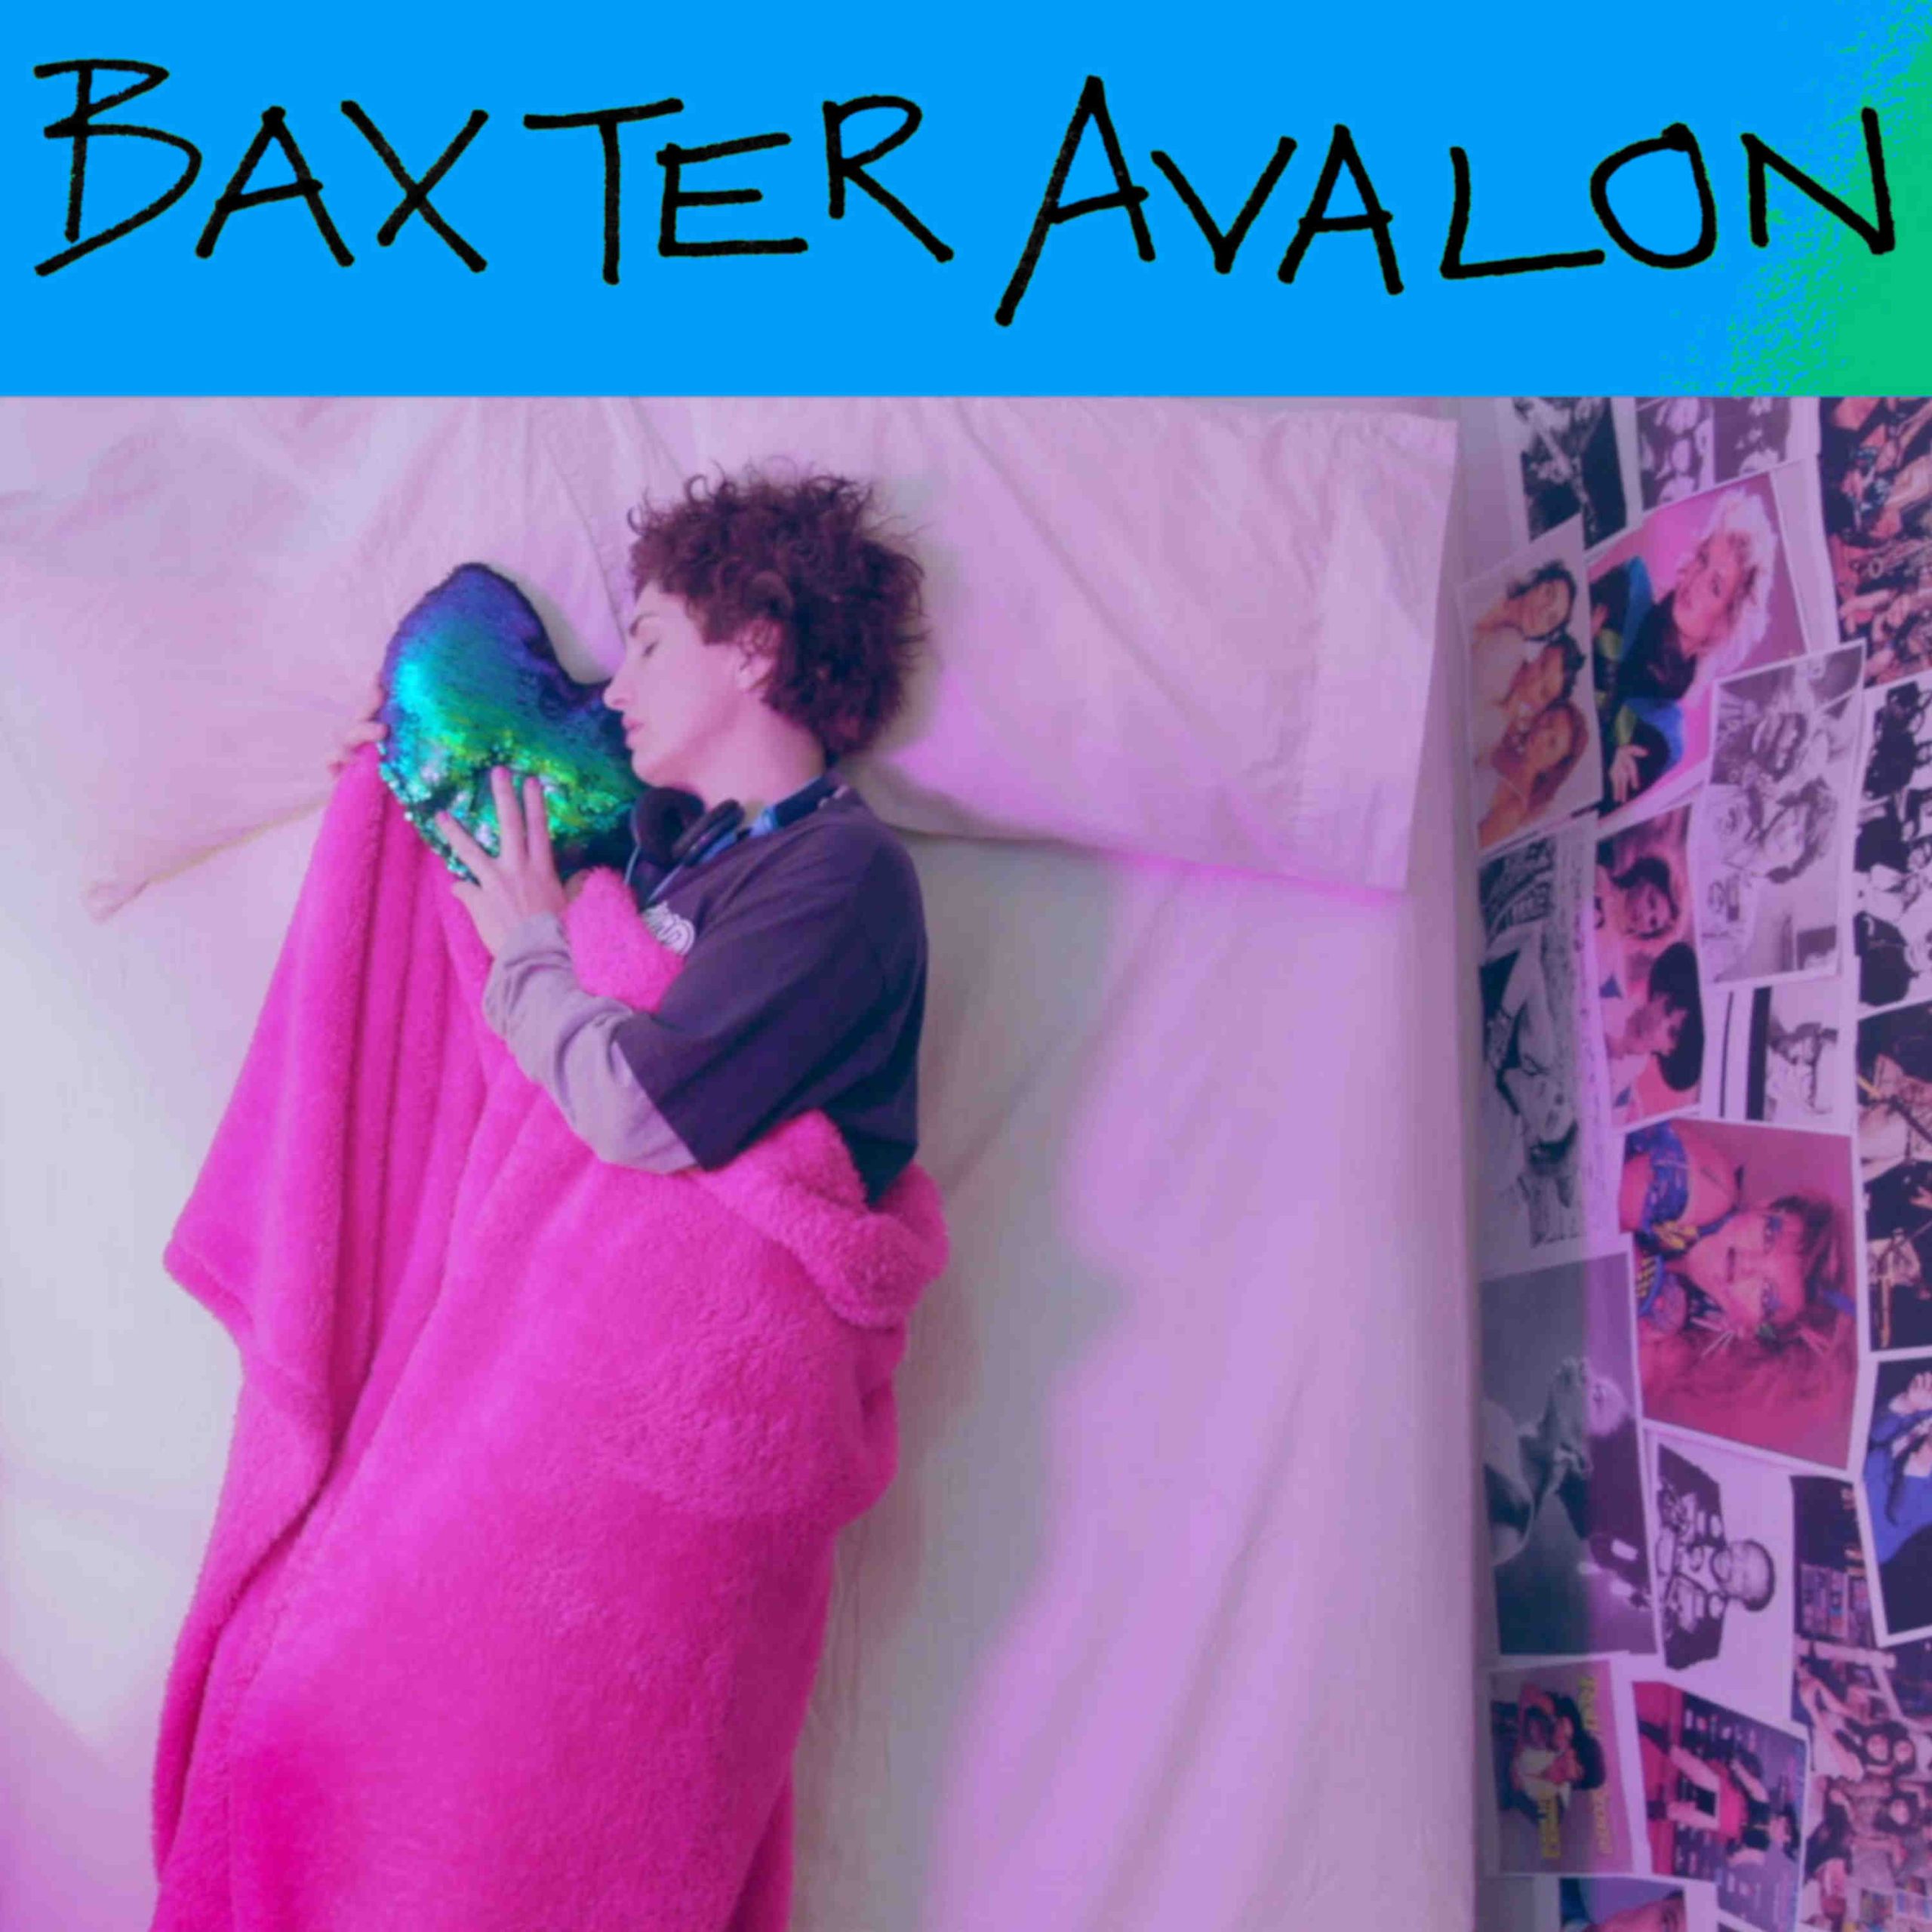 Baxter Avalon - Witness